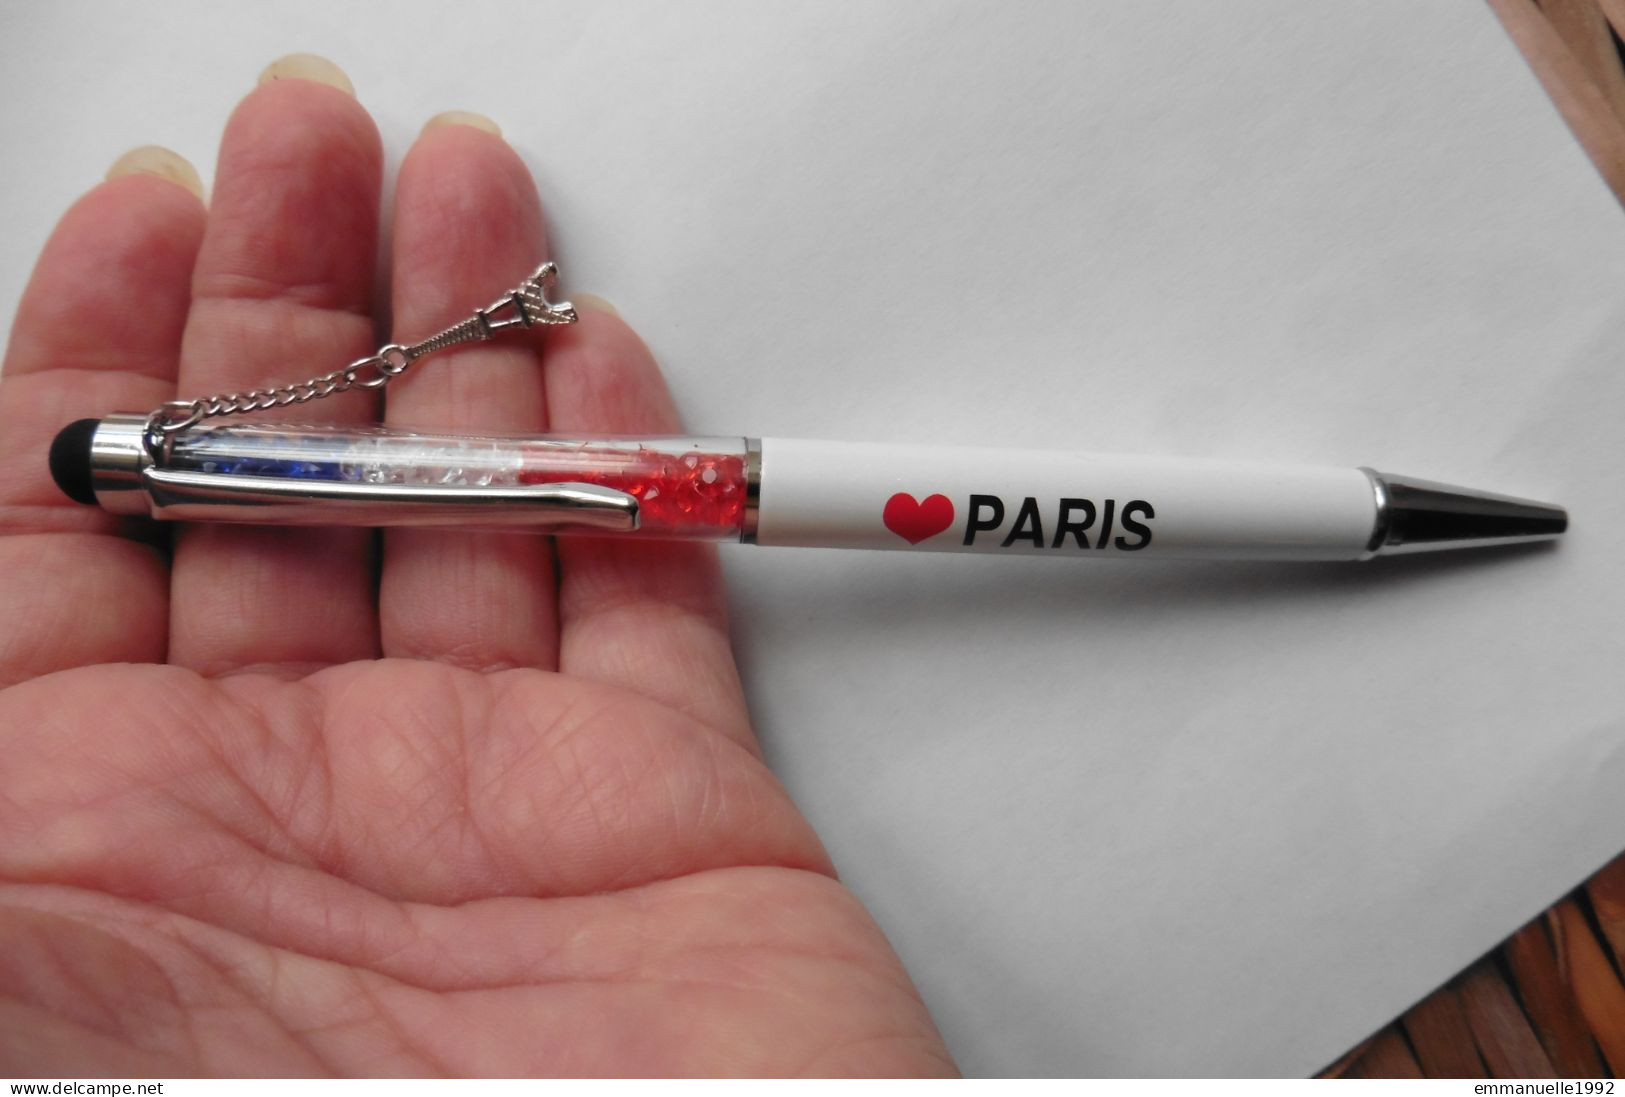 Stylo Mobile Souvenir Floaty Pen - I Love Paris France Drapeau Breloque Tour Eiffel Lucky Charm - Stylos